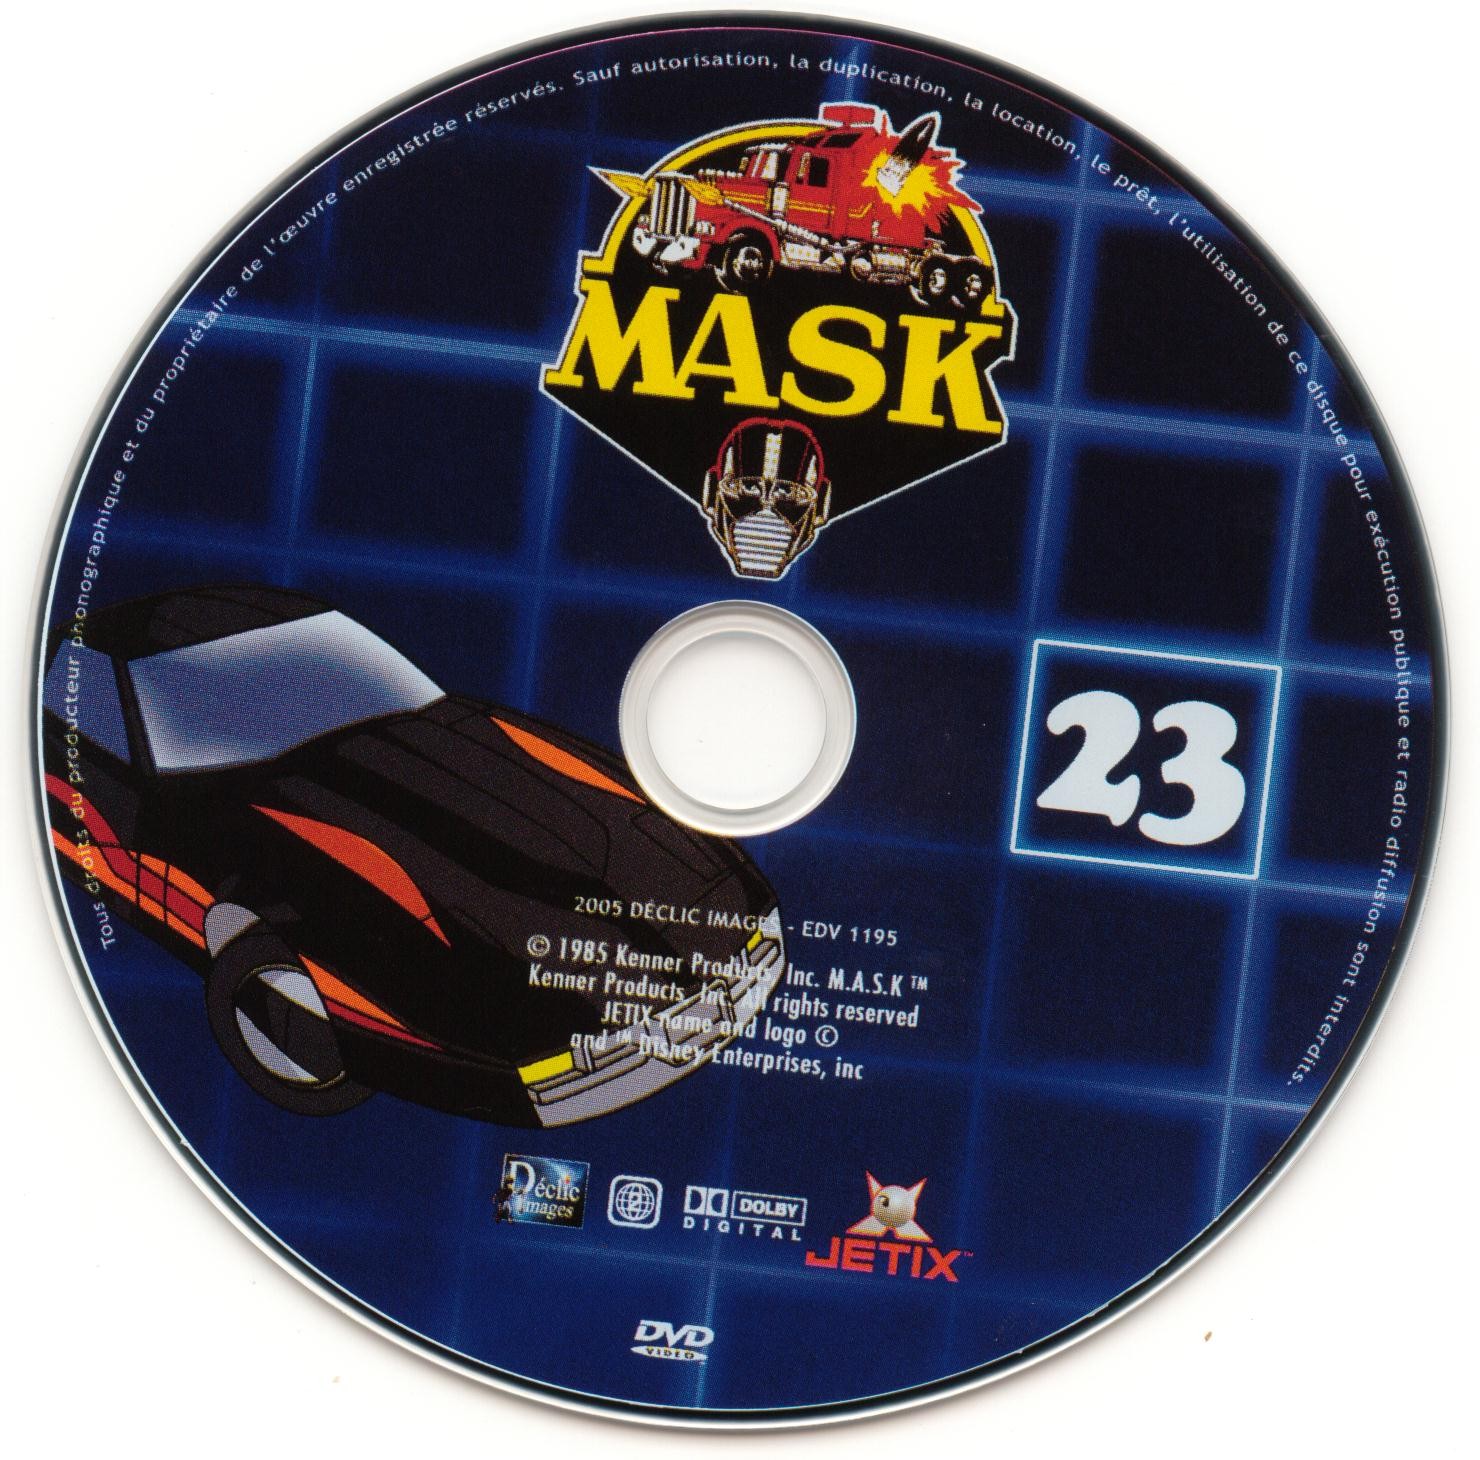 Mask vol 23